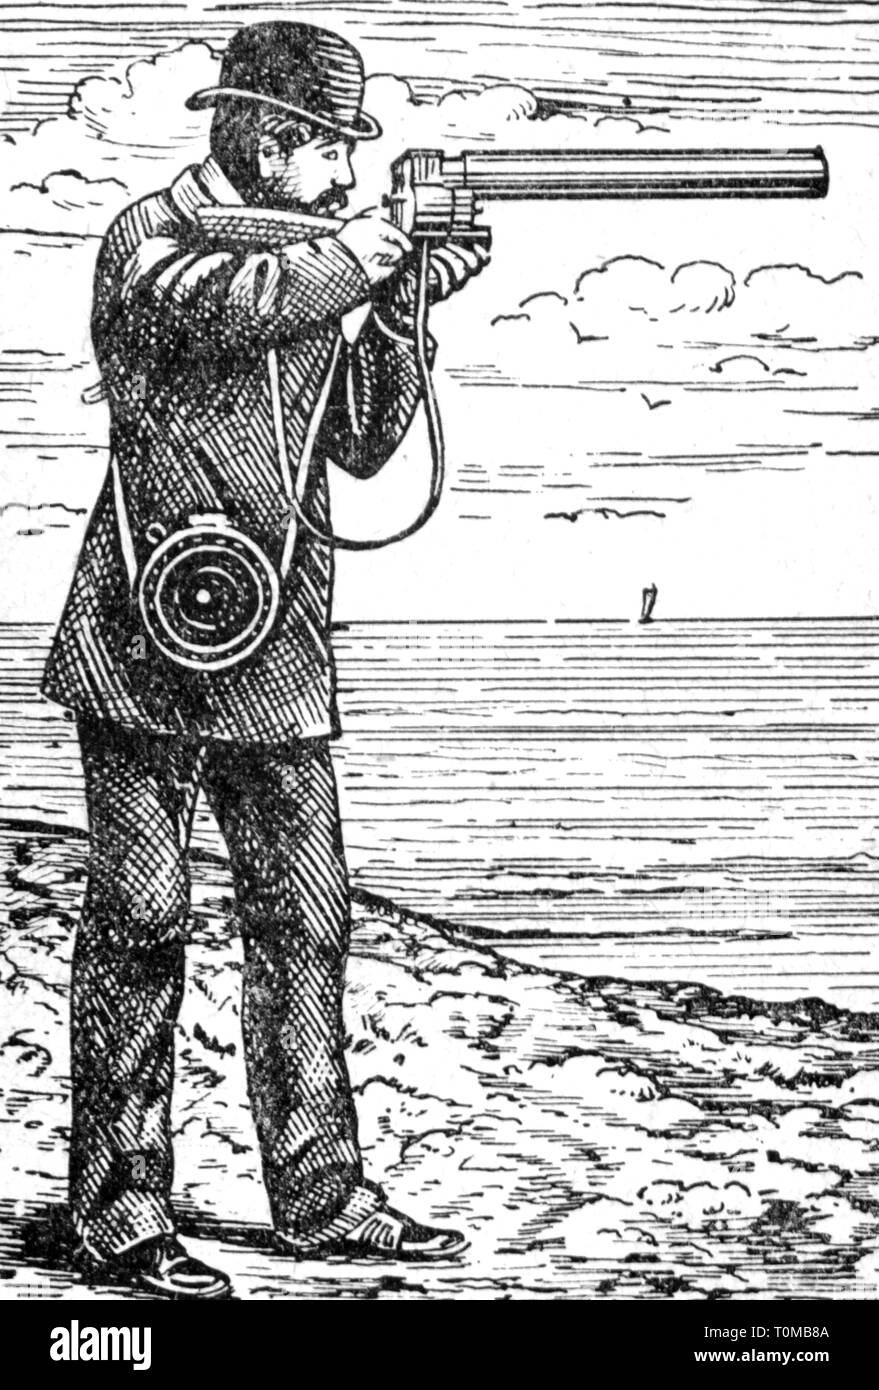 Fotografía, cámaras, chronophotographic shot gun, desarrollado por  Etienne-Jules Marey (1830 - 1904), grabado en madera, de finales del siglo  XIX, siglo xix, Gráfico, Gráficos, cámara fotográfica, toma fotográfica  pistola, fusil fotográfico, movimiento,